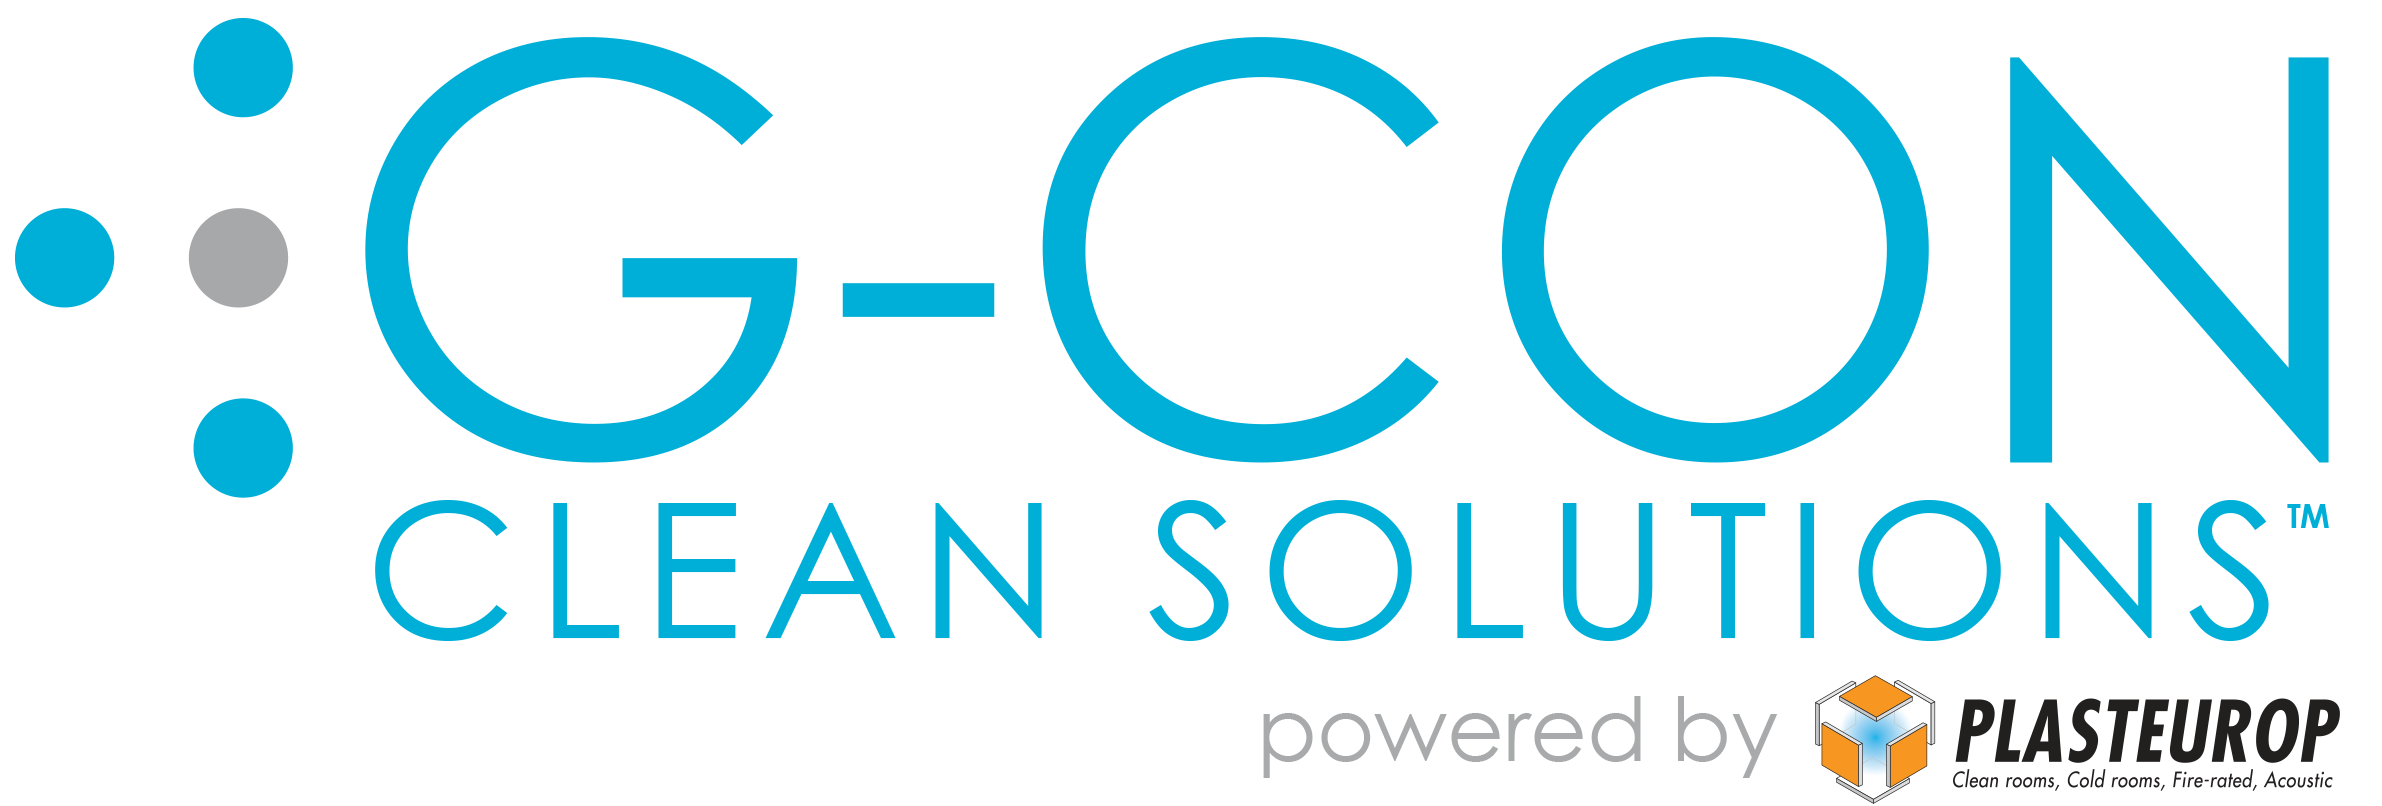 gccs-logo